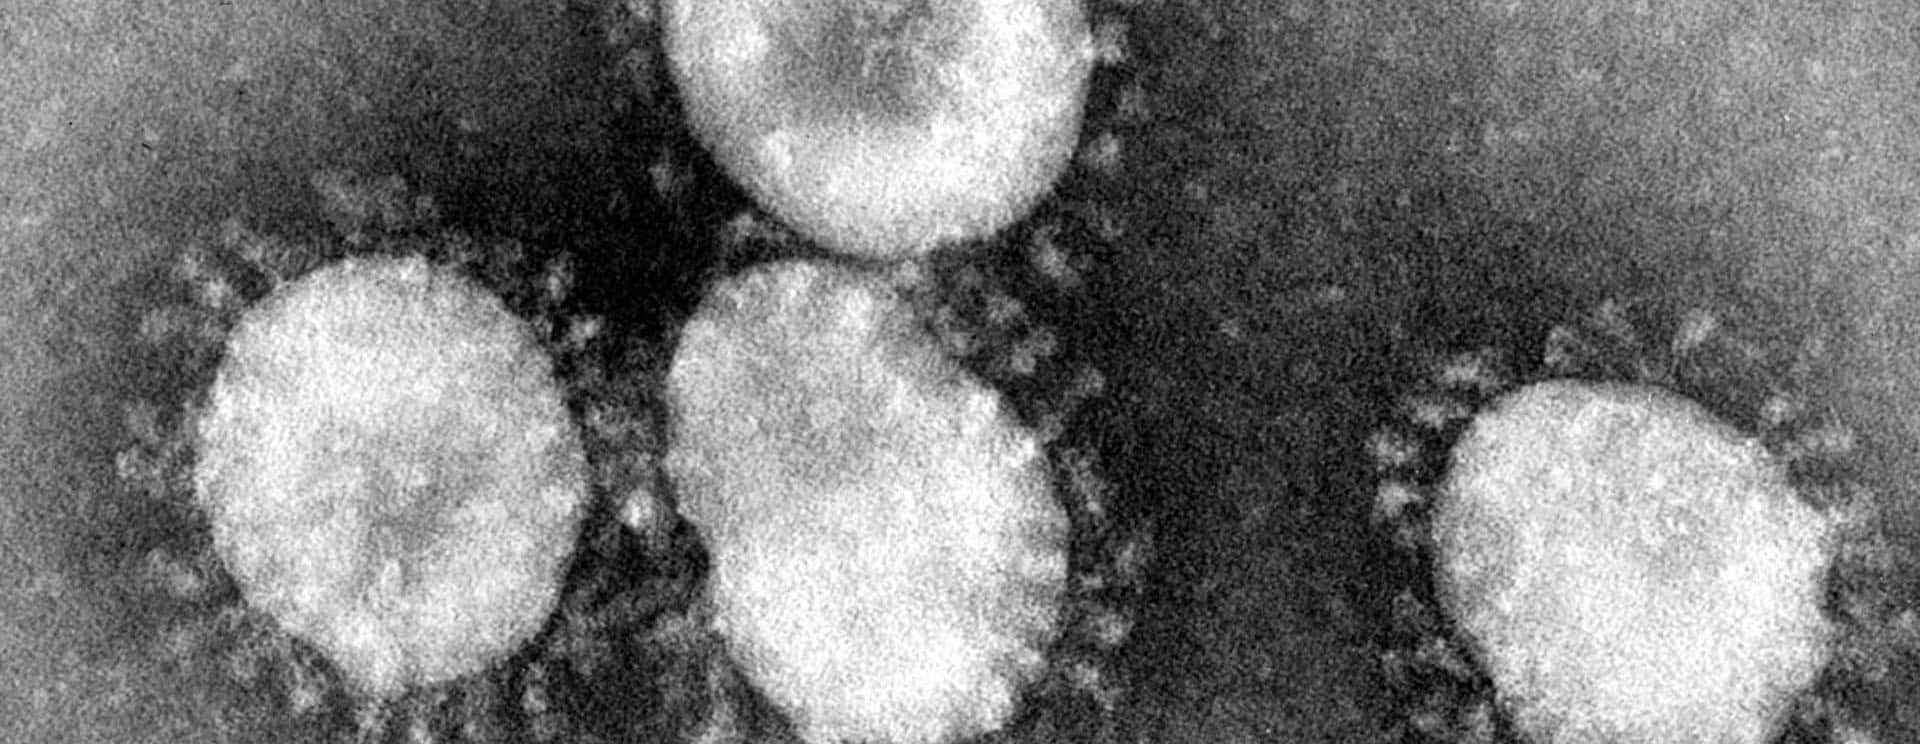 coronaviruses-jpg-18